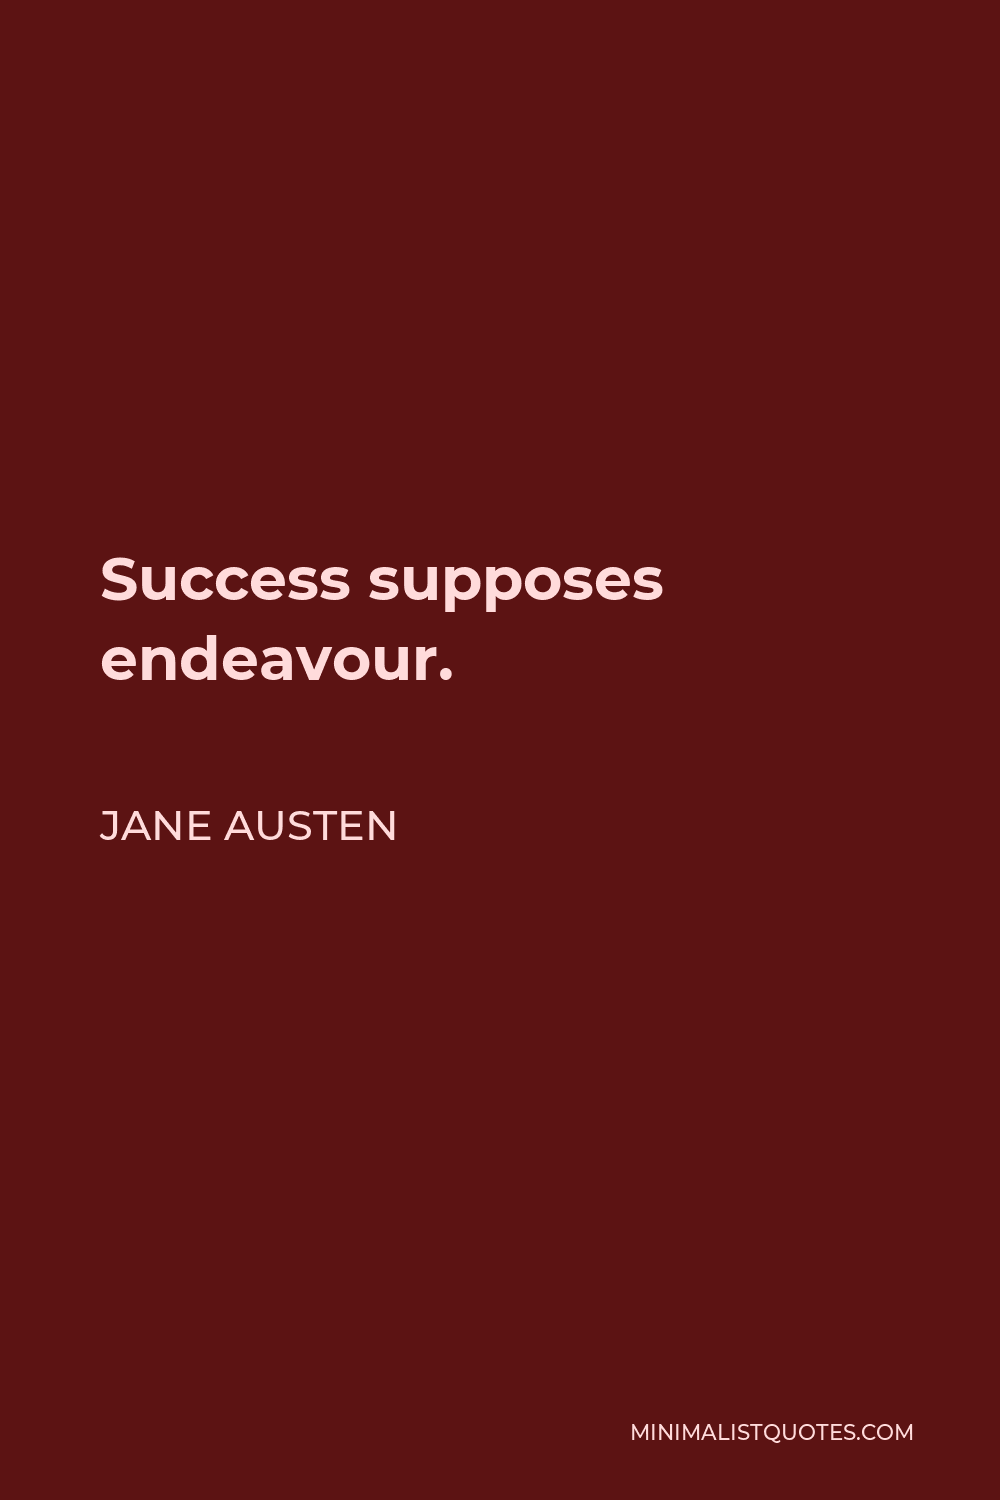 Jane Austen Quote - Success supposes endeavour.